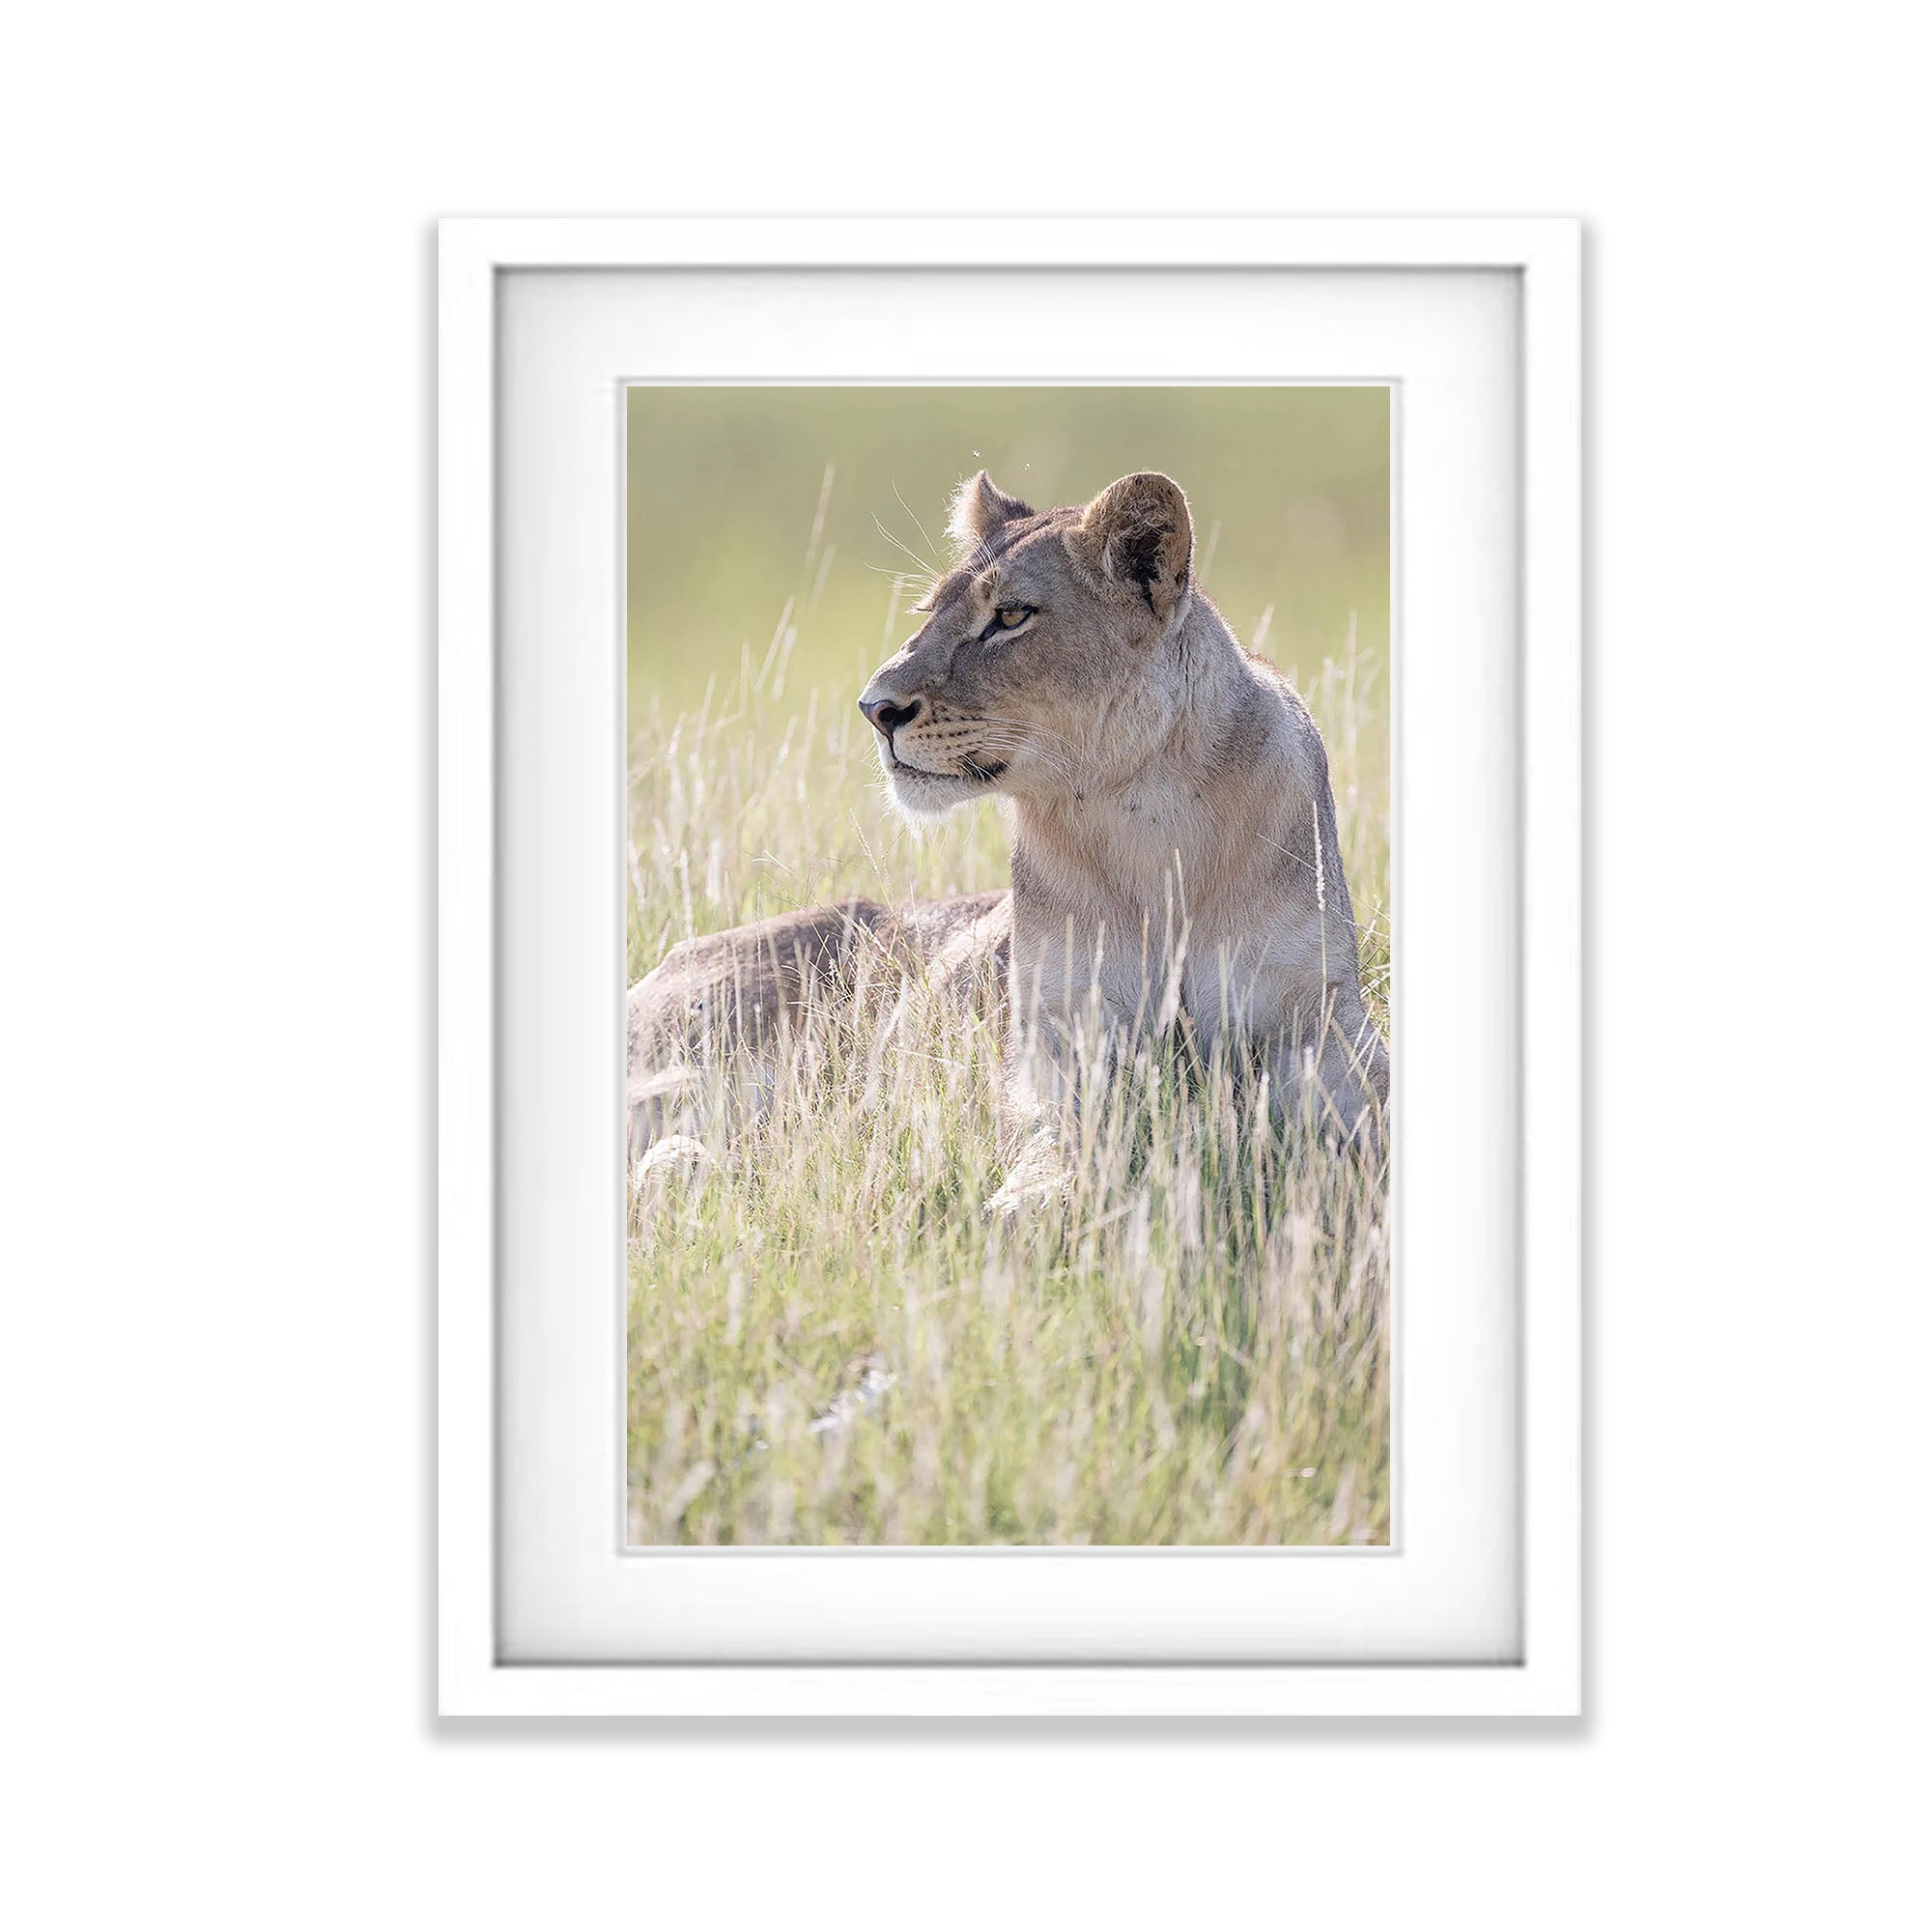 Lioness portrait, Okavango Delta, Botswana